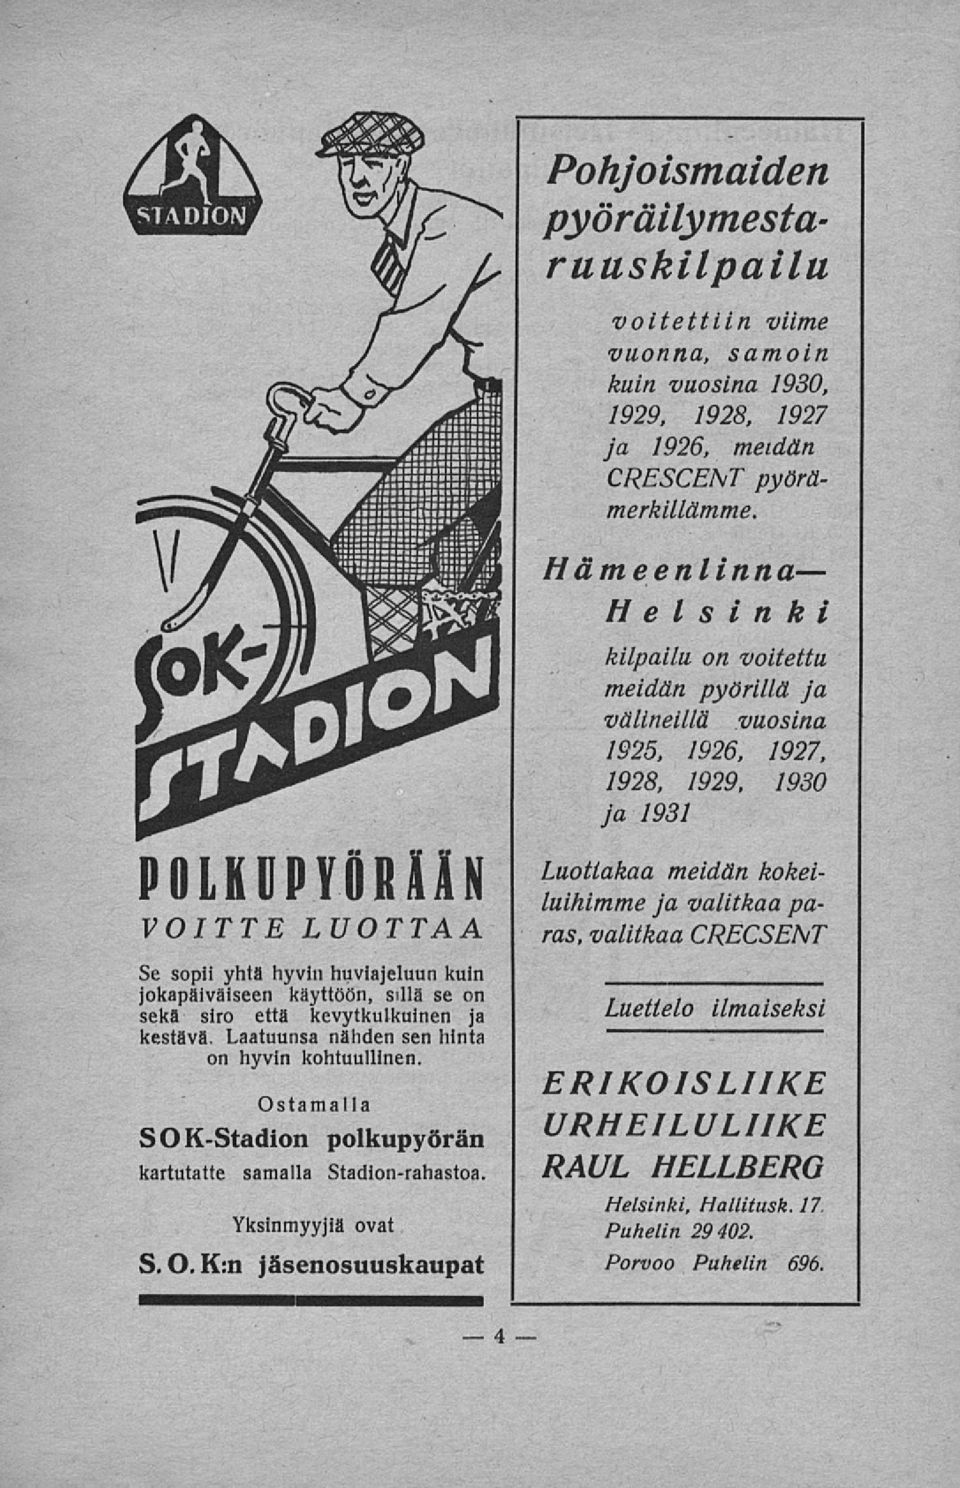 Ostamalla SOK-Stadion polkupyörän kartutatte samalla Stadion-rahastoa.